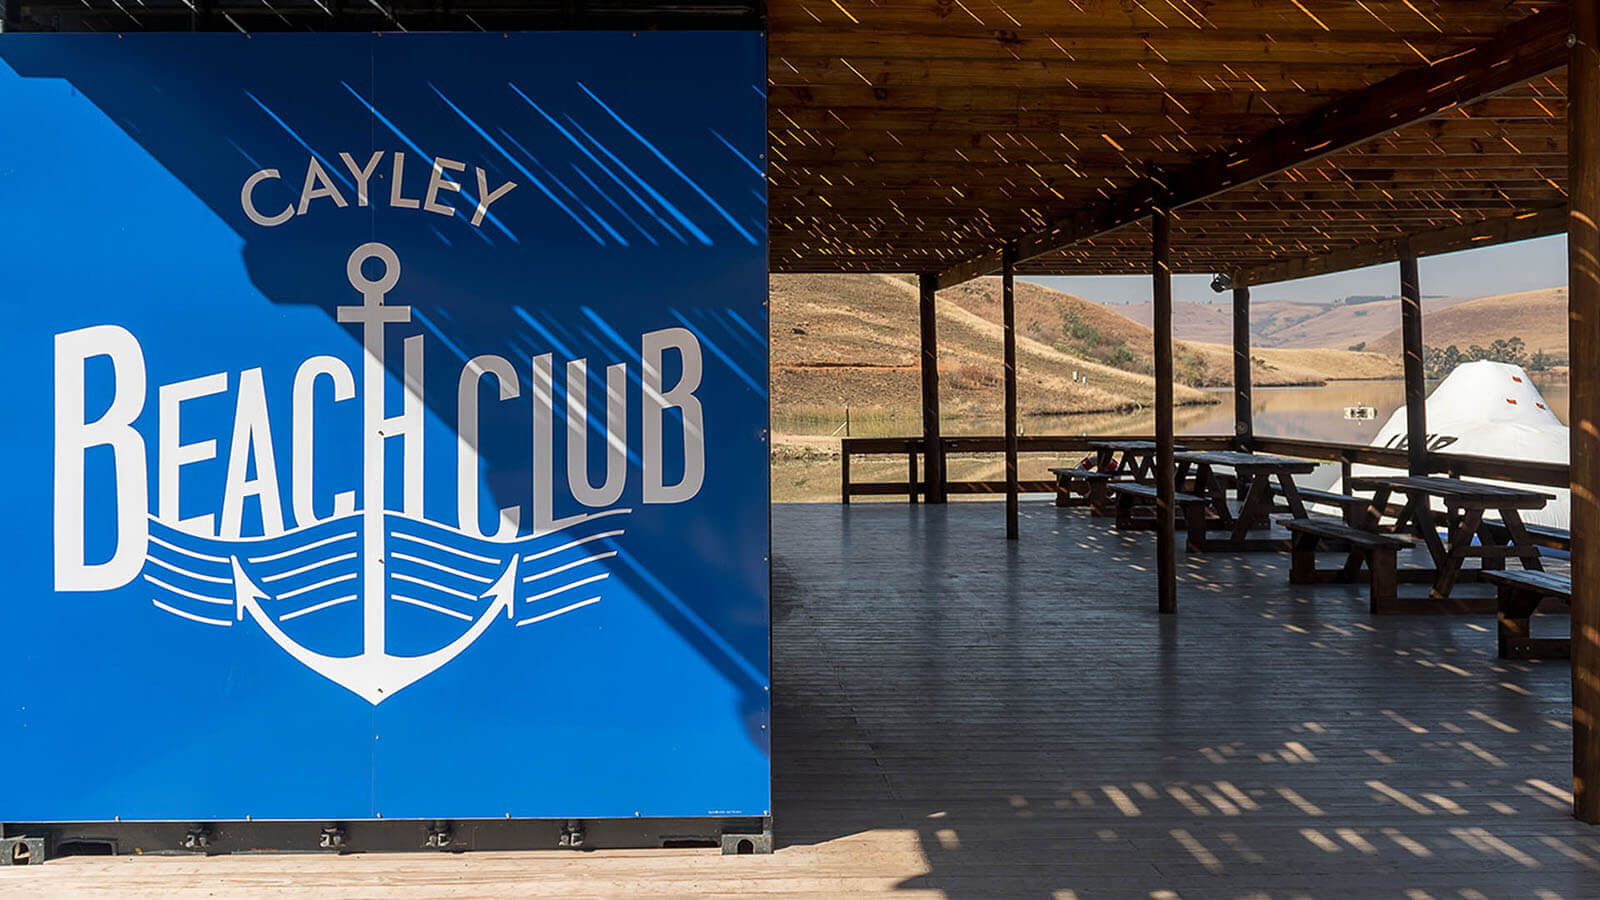 Cayley Beach Club